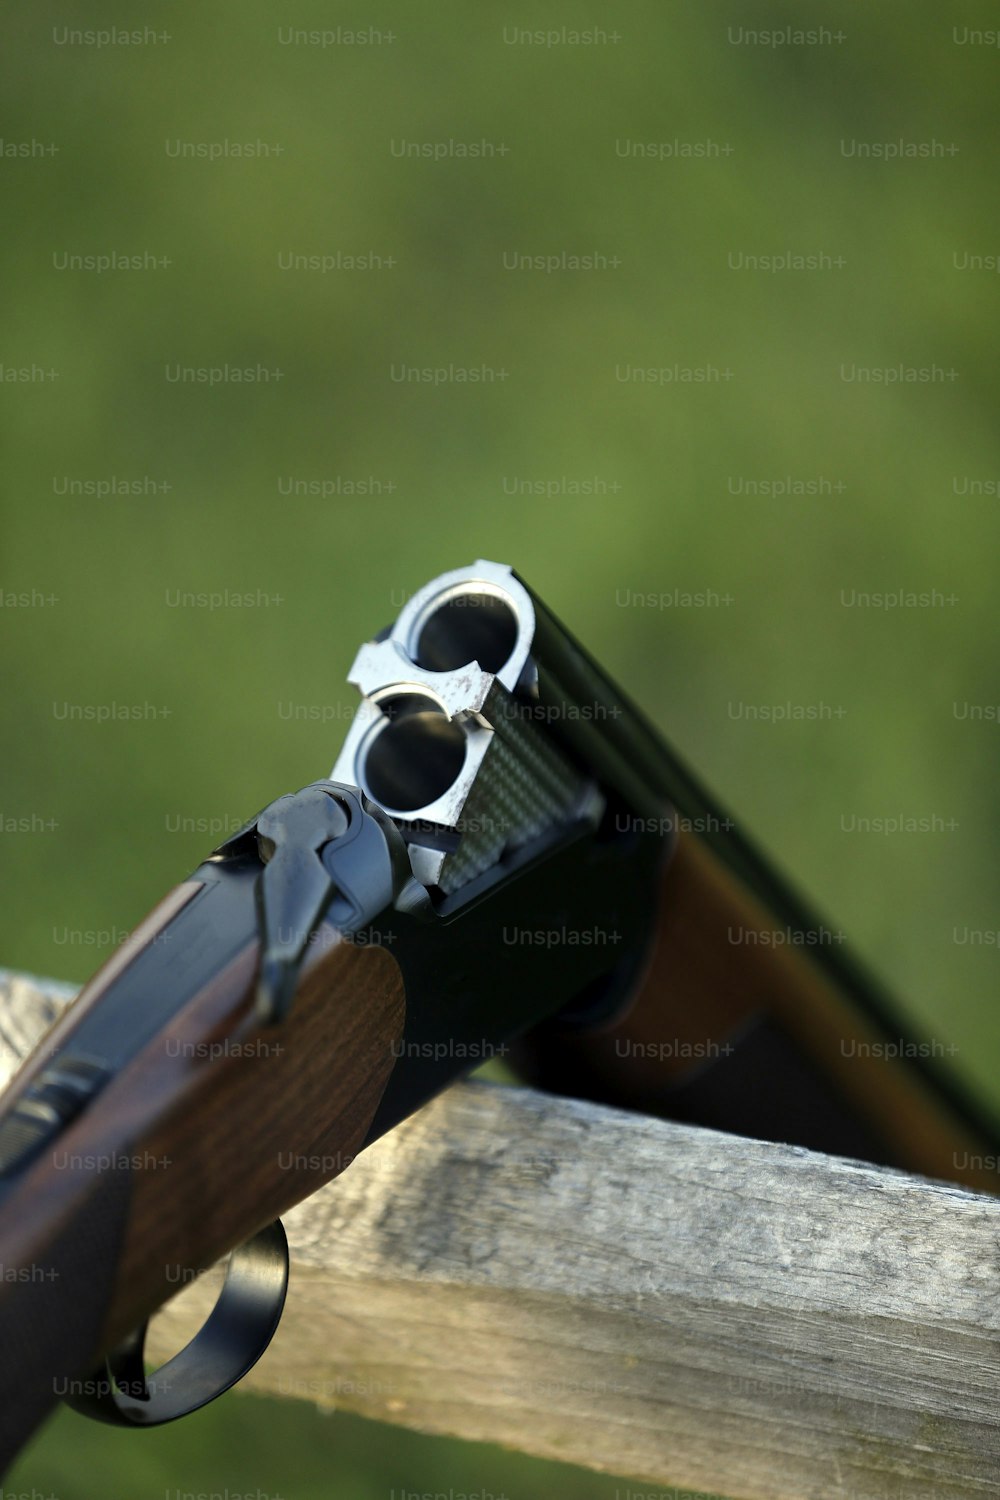 Un primer plano de una pistola en una barandilla de madera